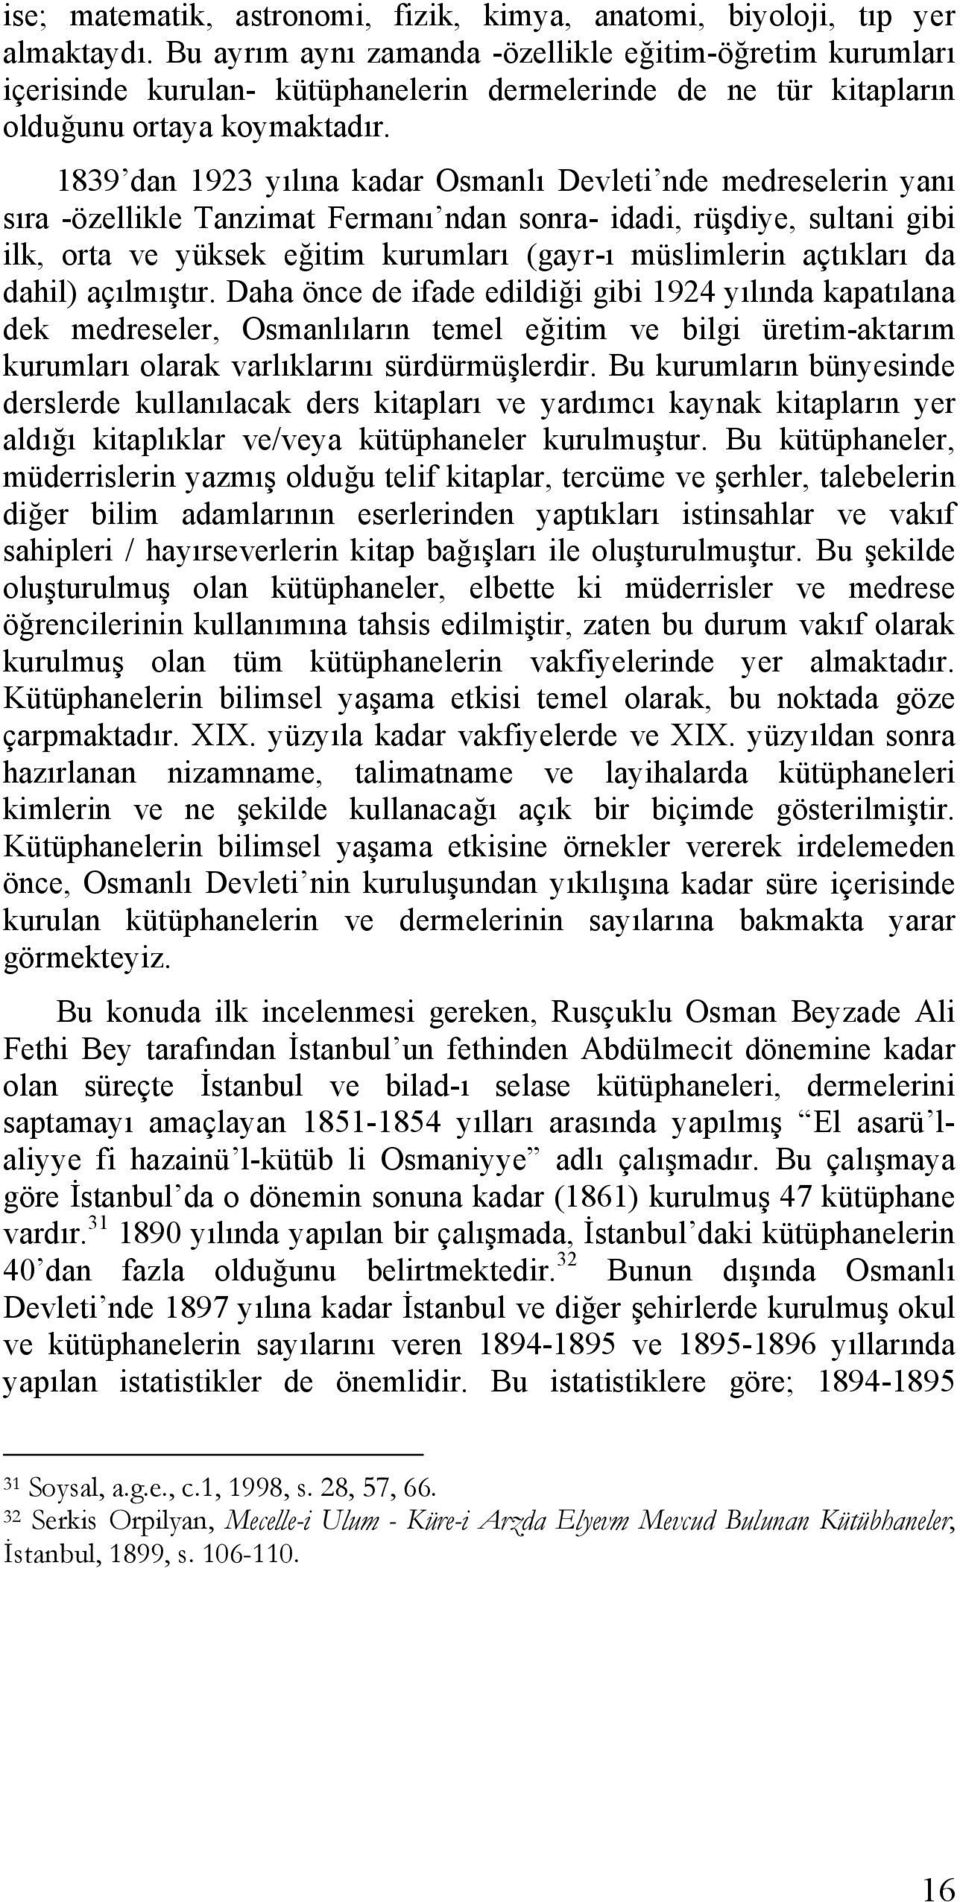 1839 dan 1923 yılına kadar Osmanlı Devleti nde medreselerin yanı sıra -özellikle Tanzimat Fermanı ndan sonra- idadi, rüşdiye, sultani gibi ilk, orta ve yüksek eğitim kurumları (gayr-ı müslimlerin